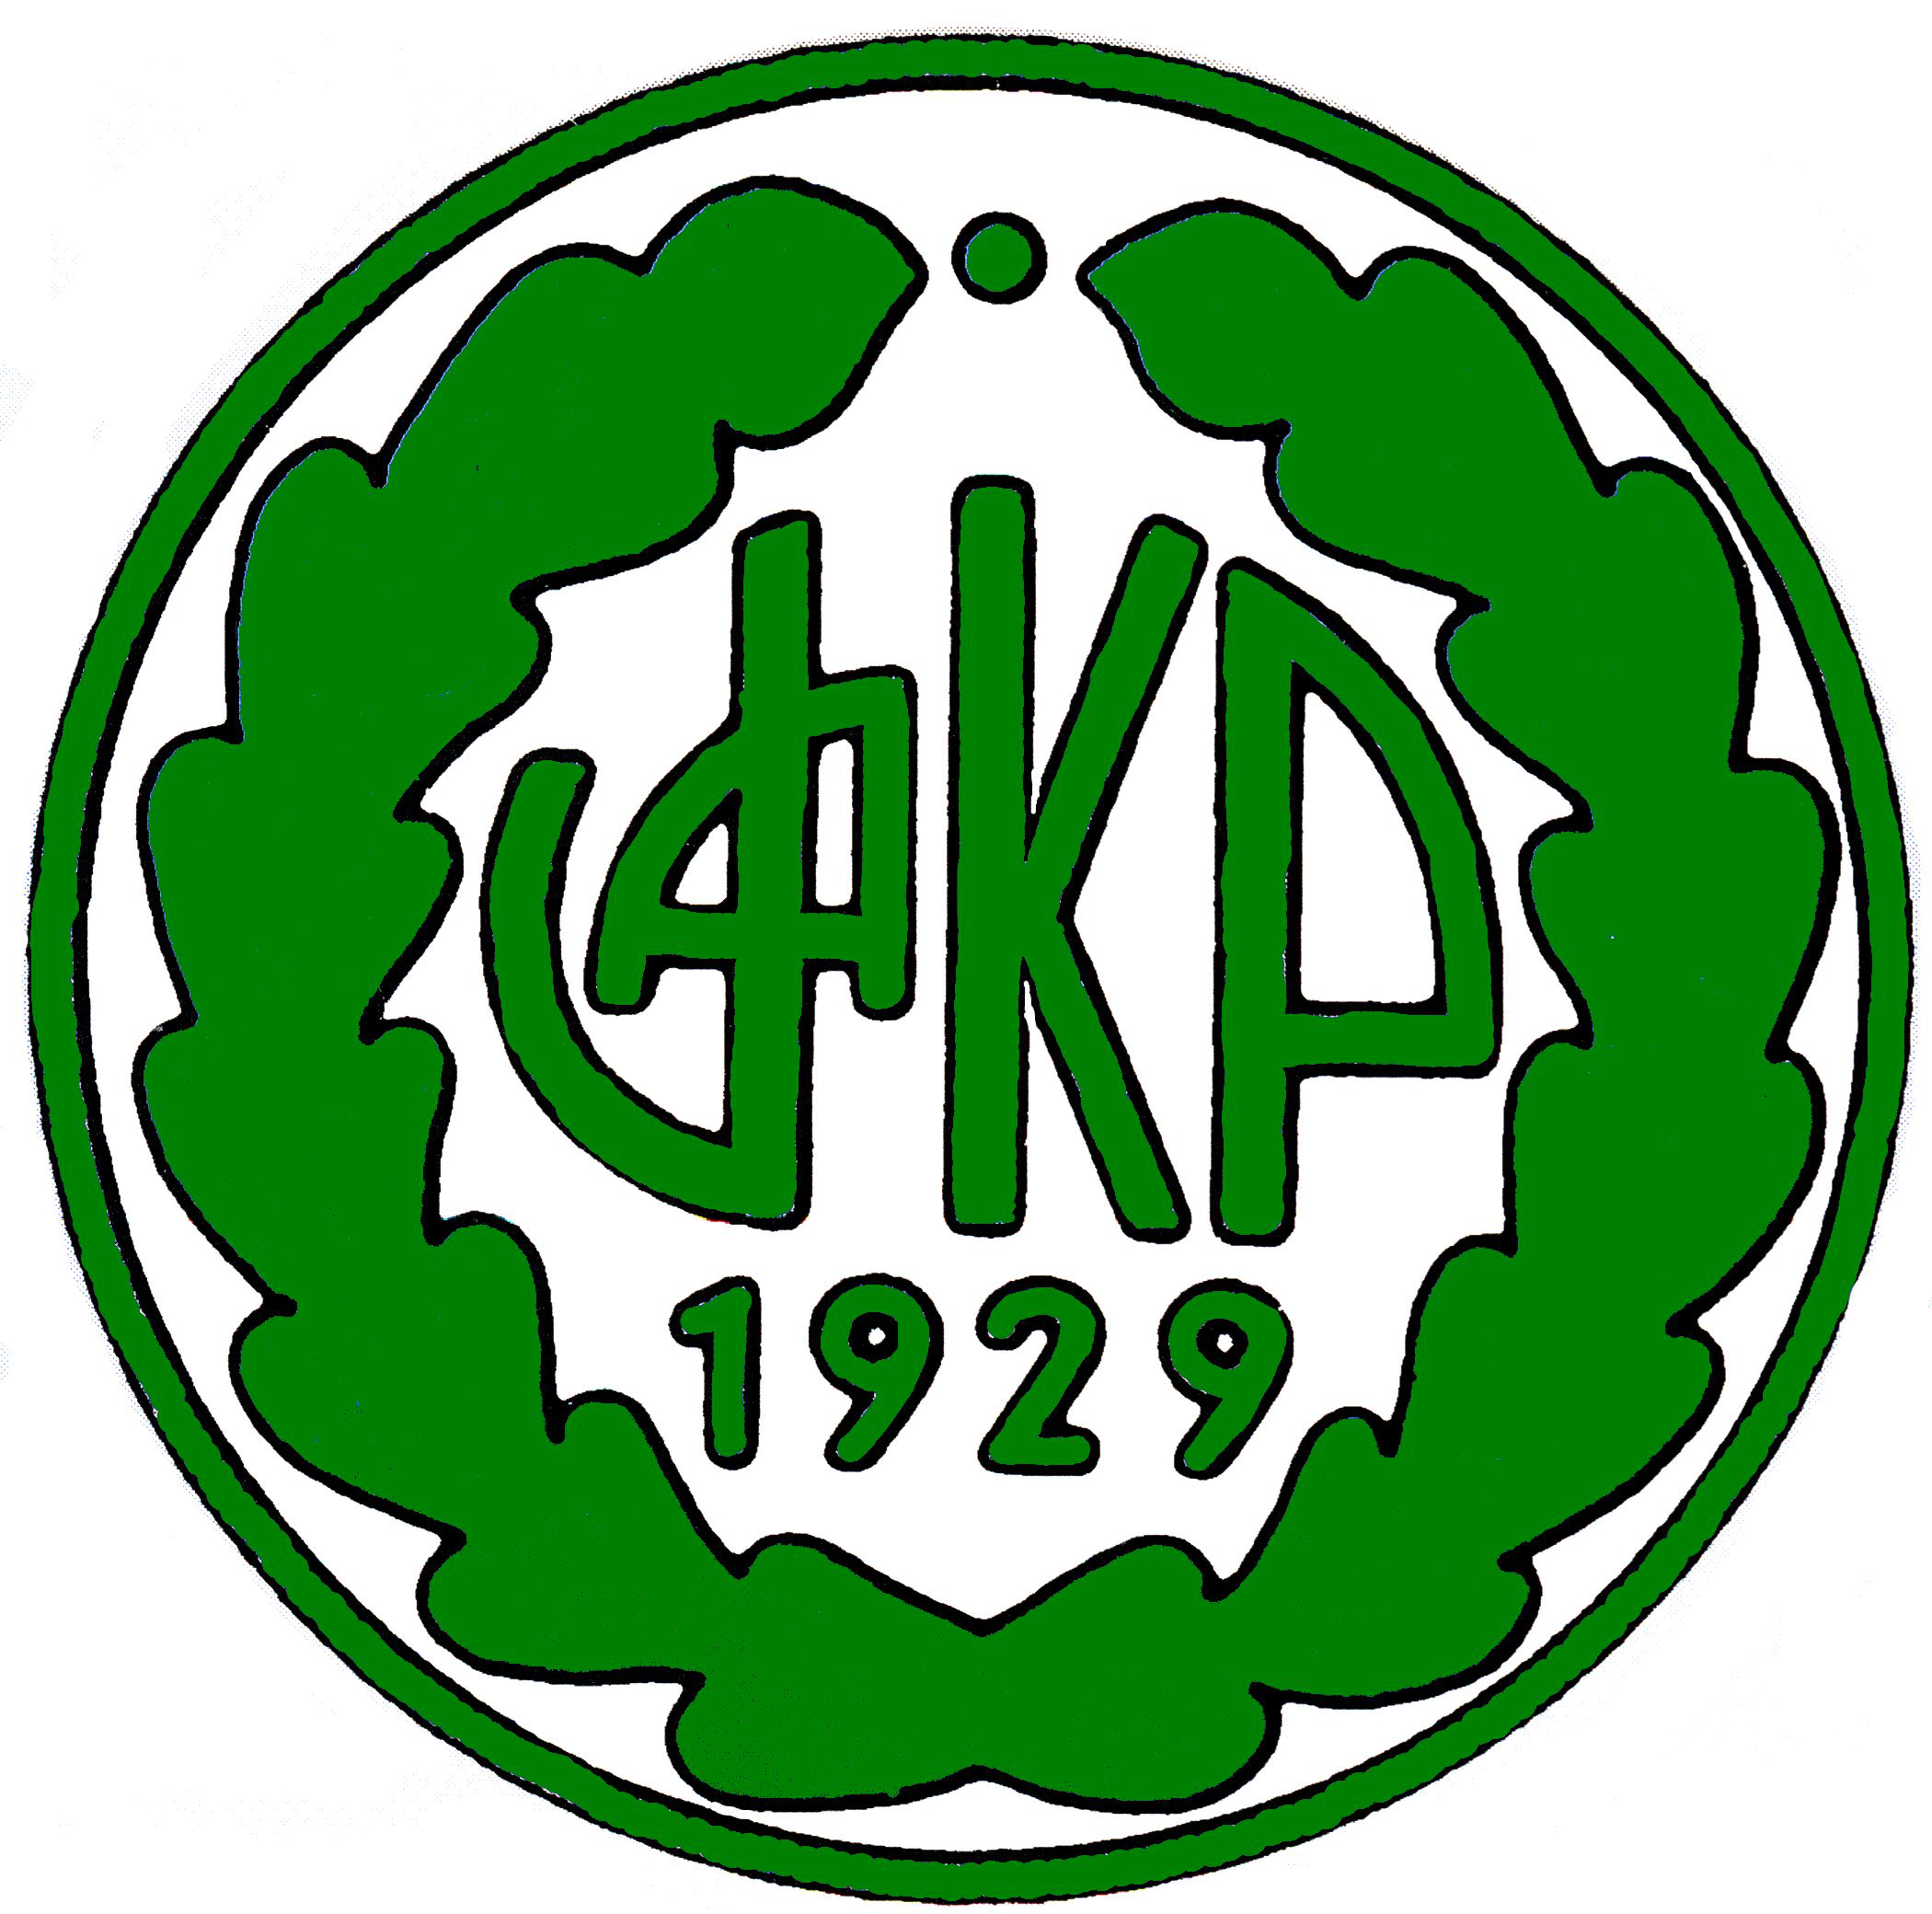 VaKP team logo